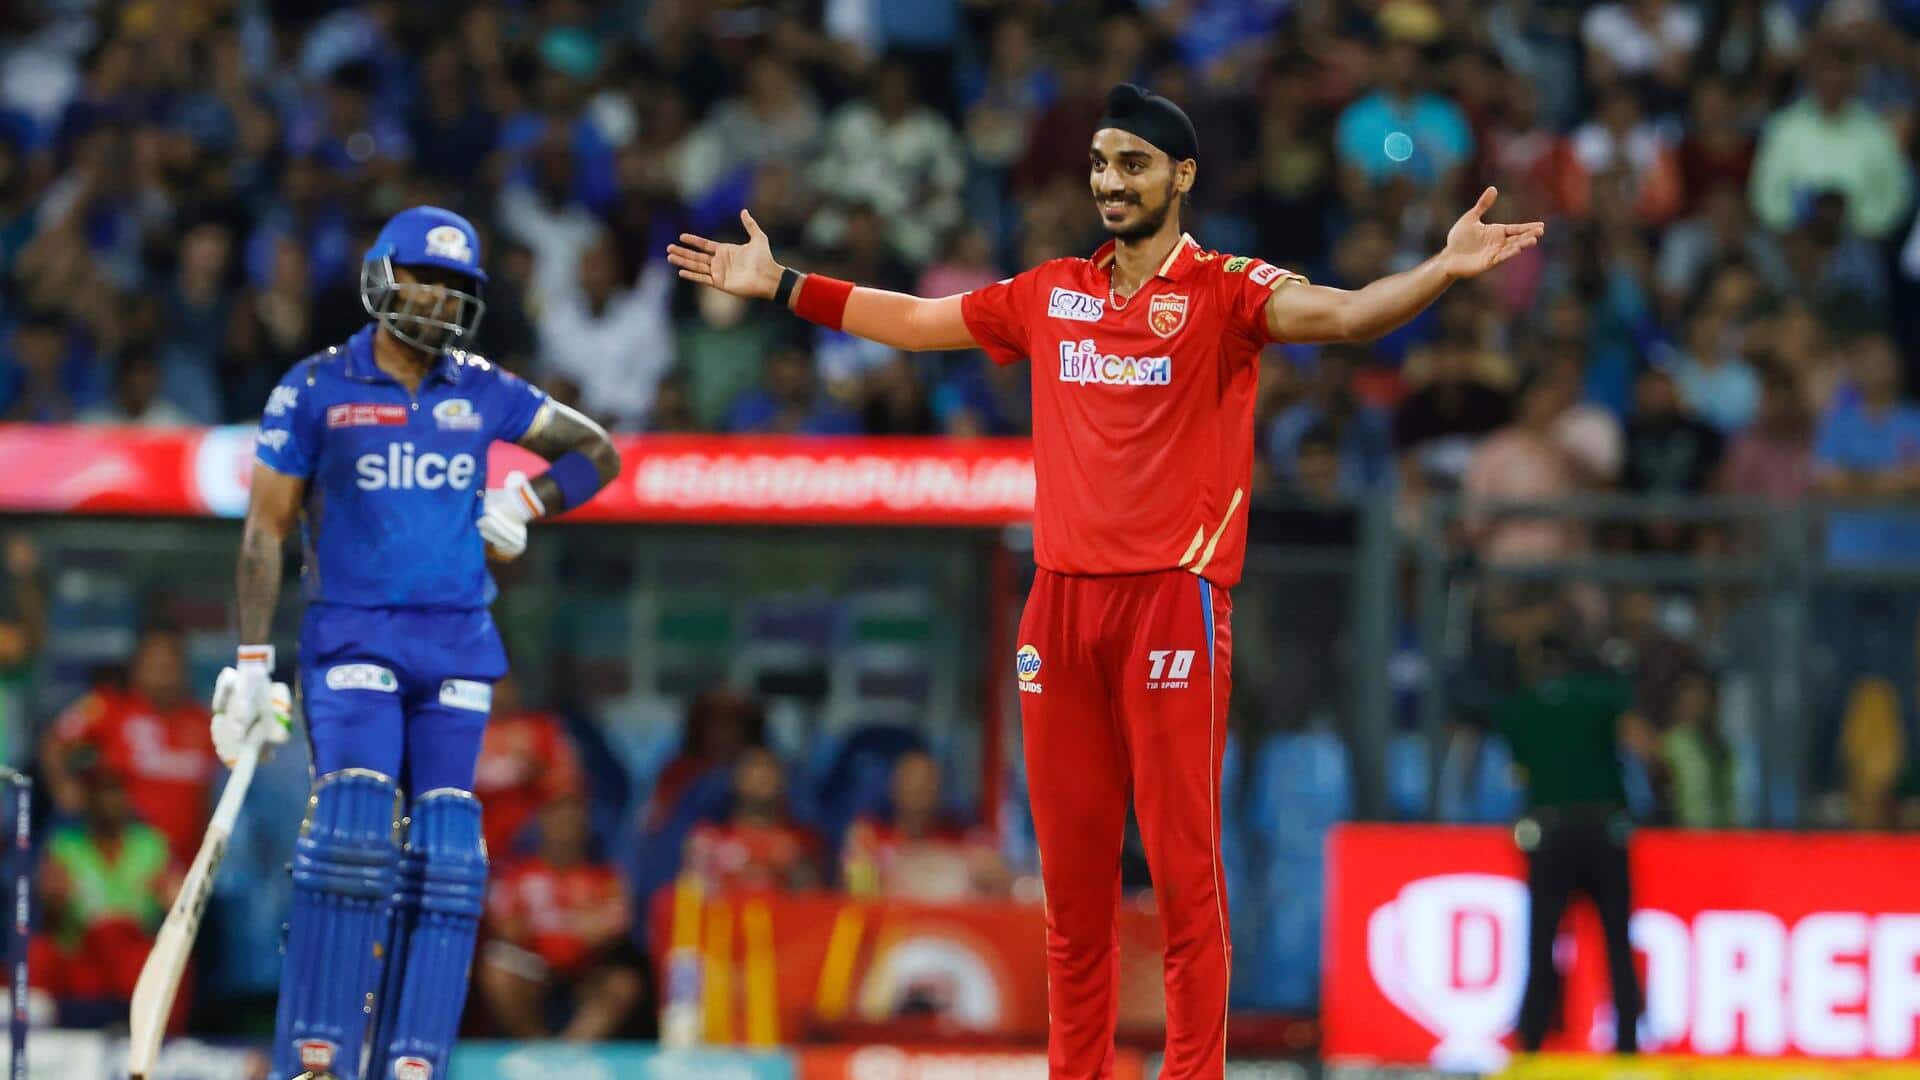 MI बनाम PBKS: अर्शदीप सिंह ने मुंबई के खिलाफ झटके 4 विकेट, जानिए उनके आंकड़े